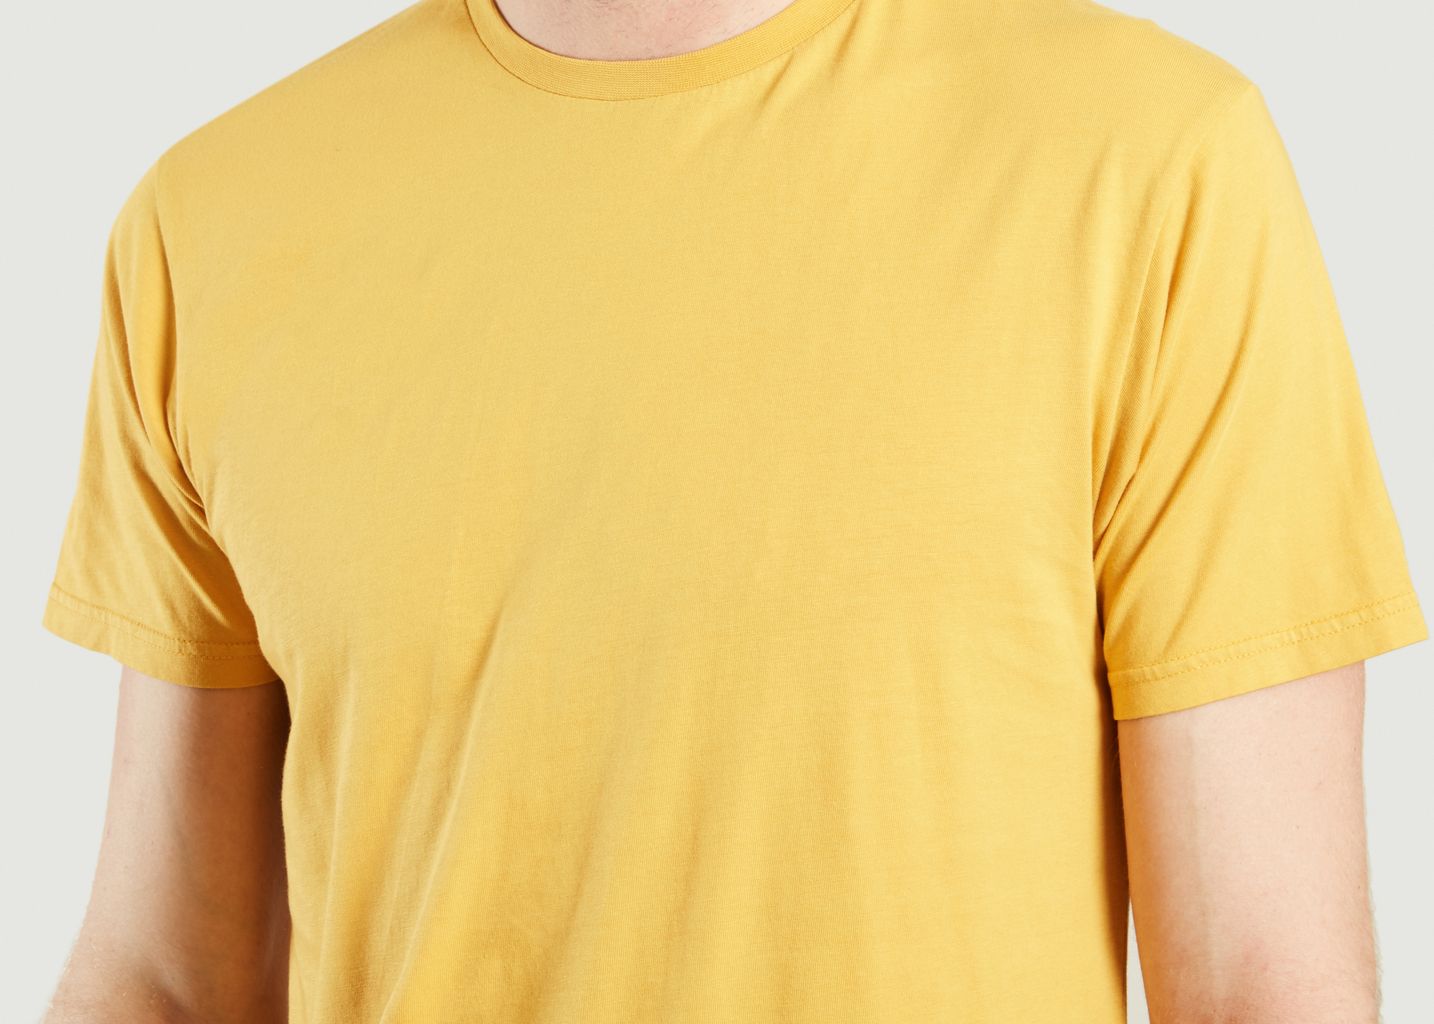 T-Shirt Classique - Colorful Standard